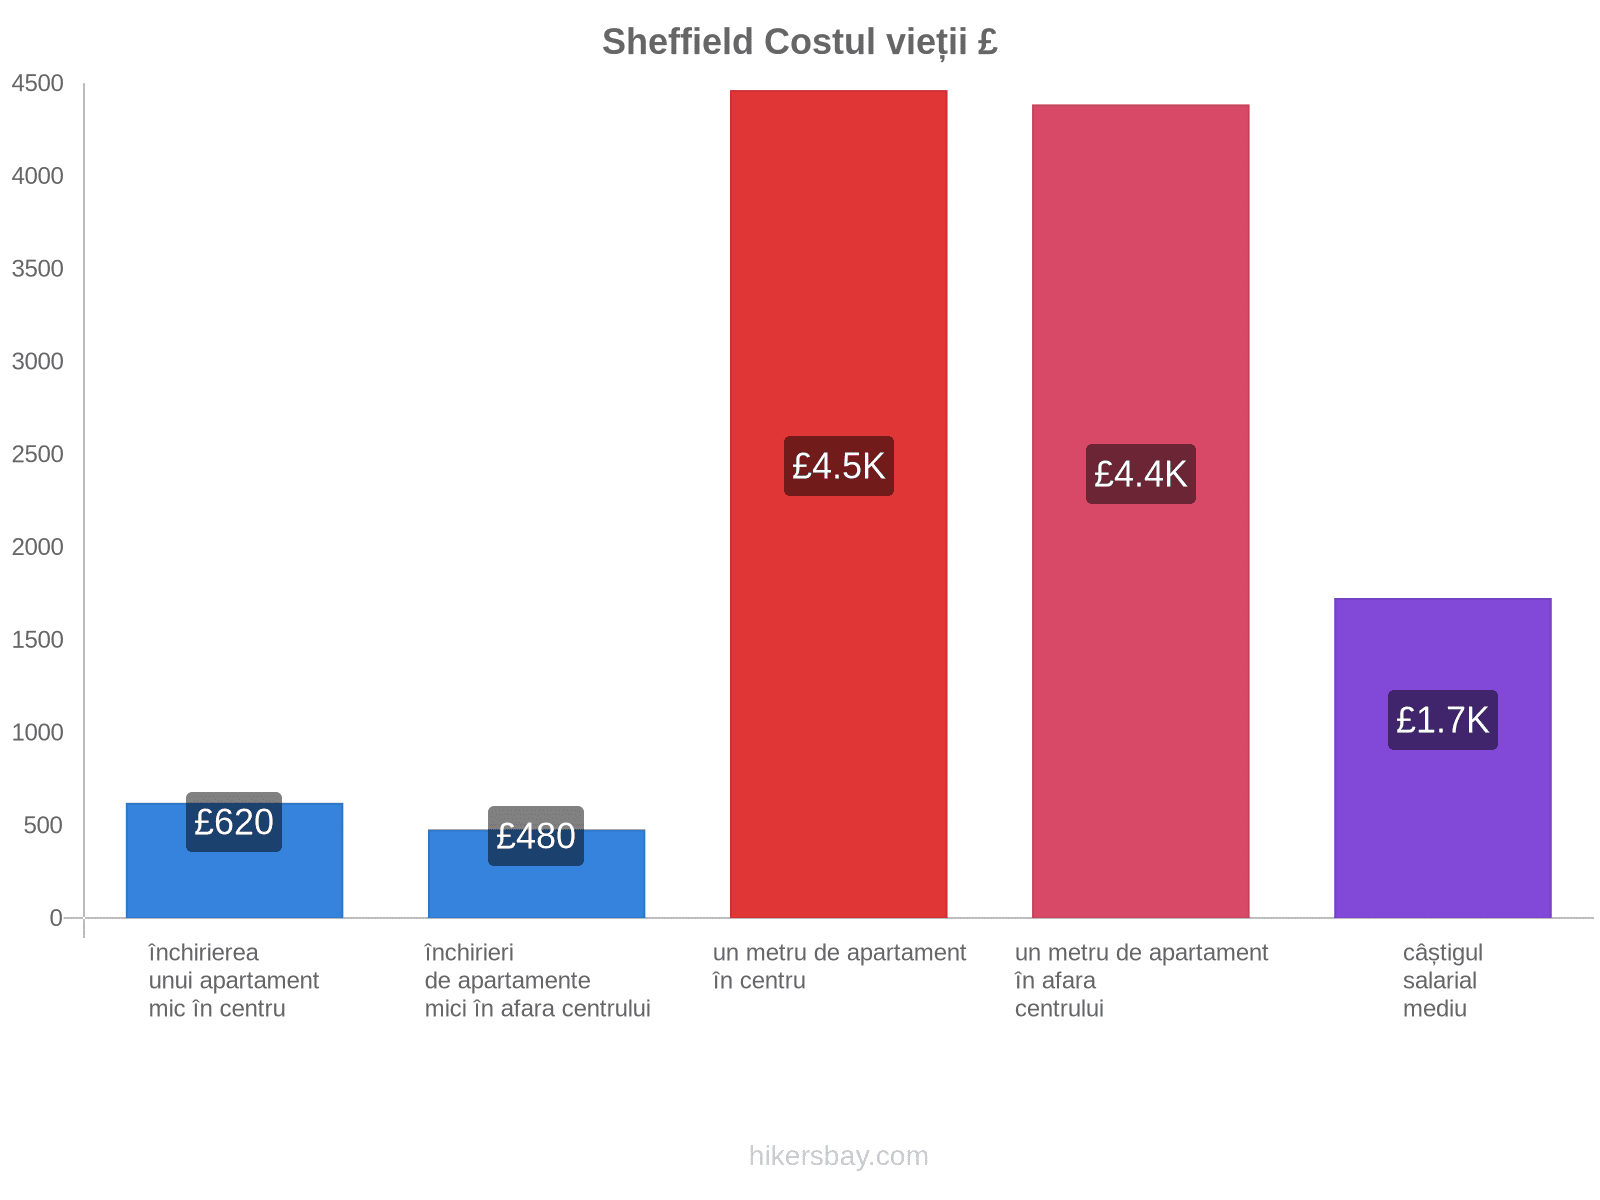 Sheffield costul vieții hikersbay.com